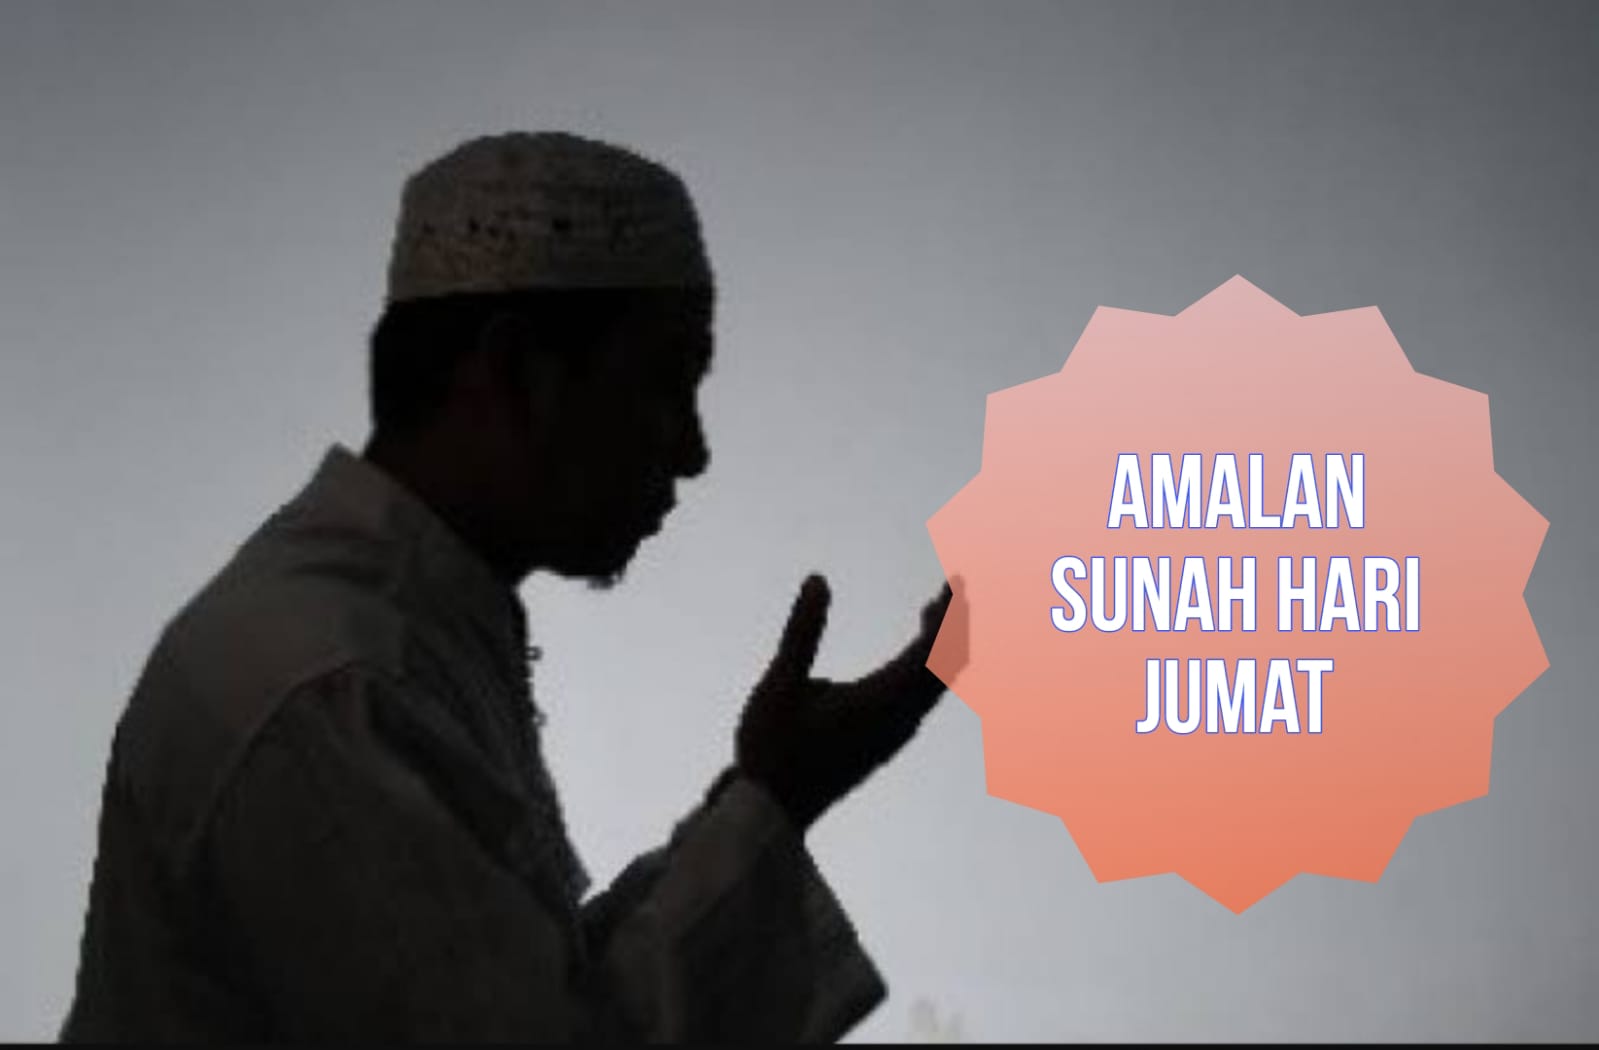 8 Amalan Sunnah yang Bisa Dikerjakan Umat Muslim di Hari Jumat, Pahalanya Besar!